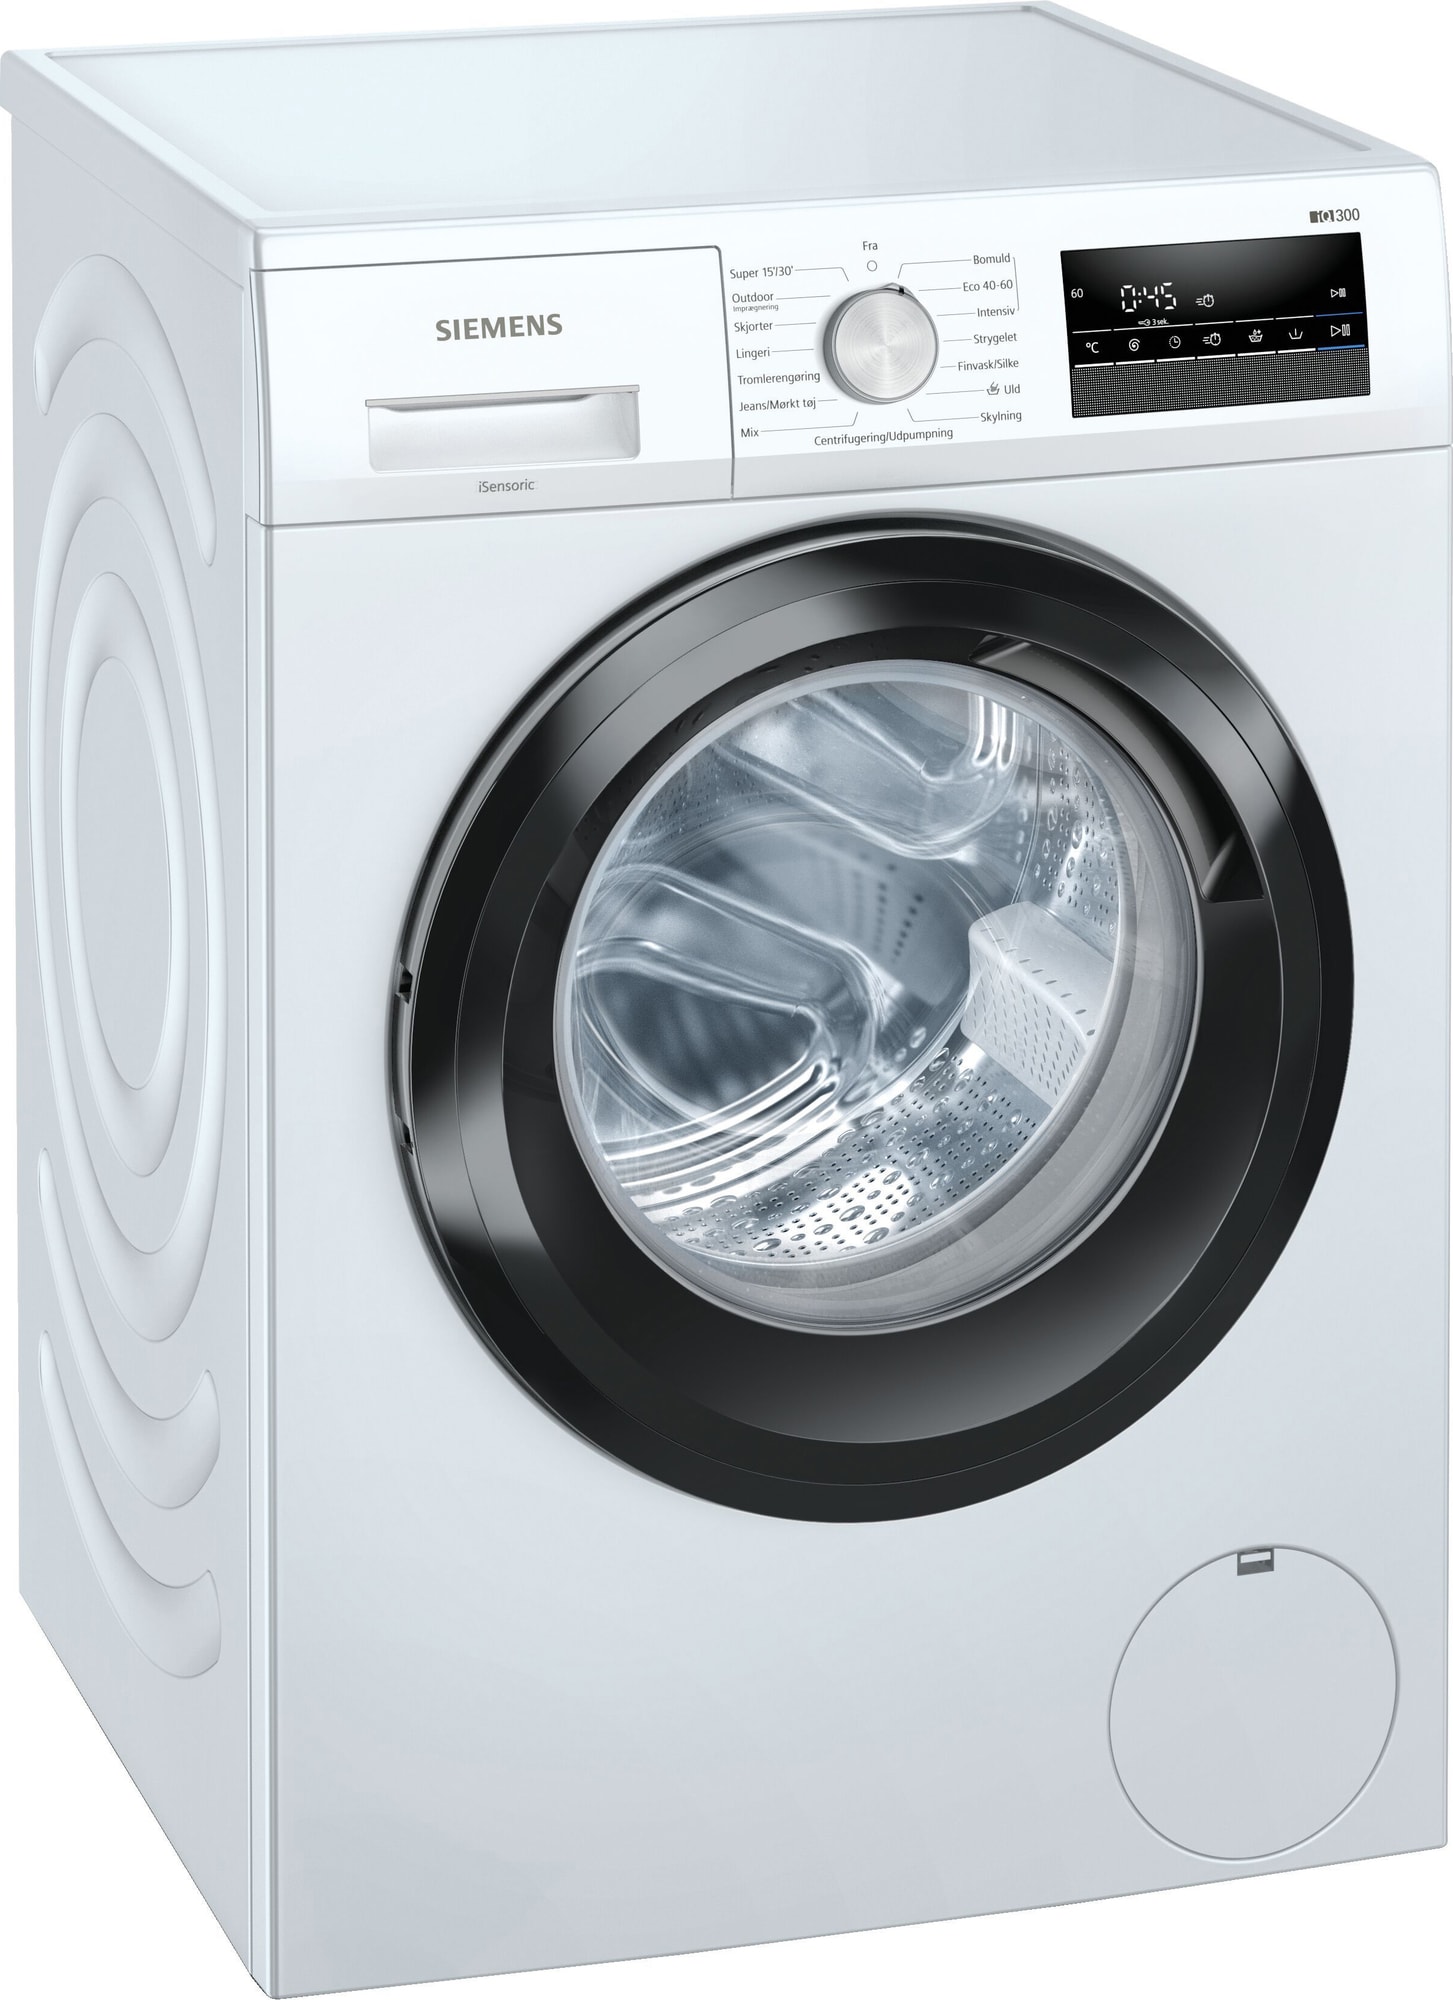 Køb Siemens Vaskemaskiner online til meget lav pris!